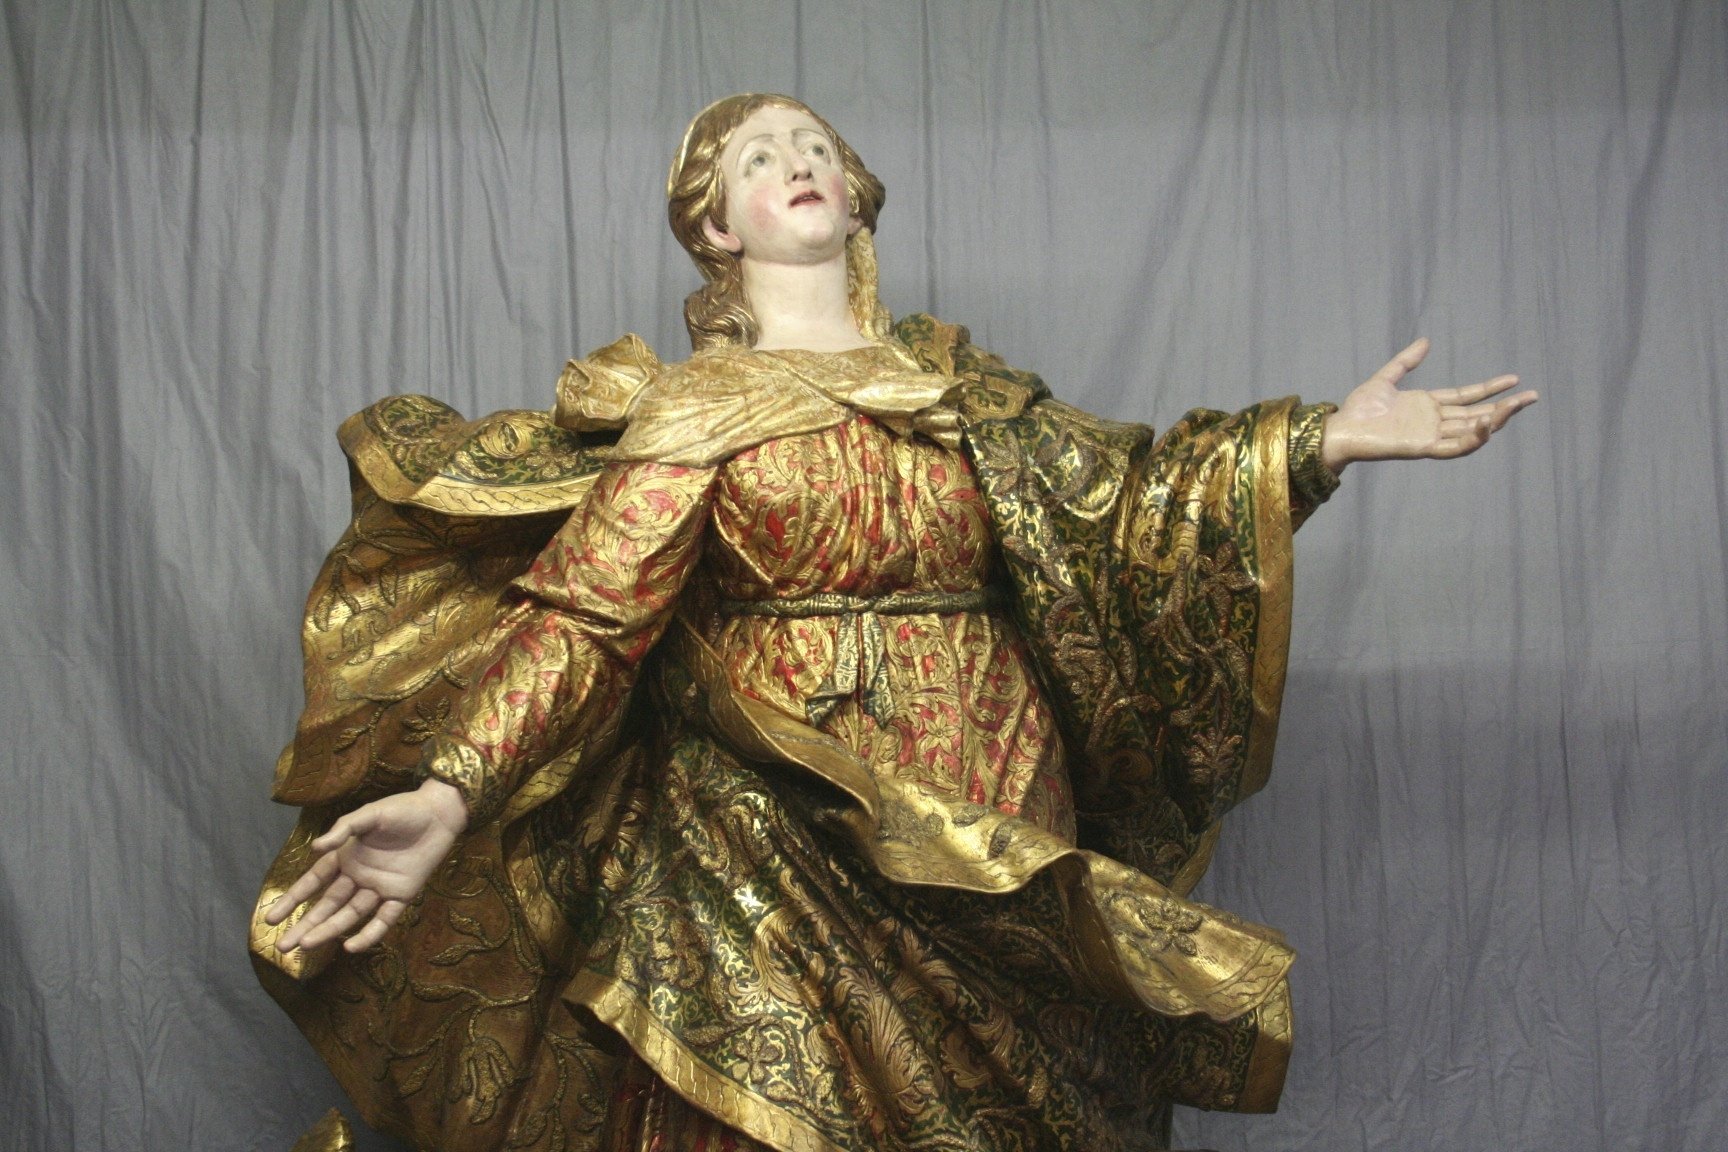 La grande statua della Madonna Assunta ritorna a Santa Maria di Castello [FOTO]